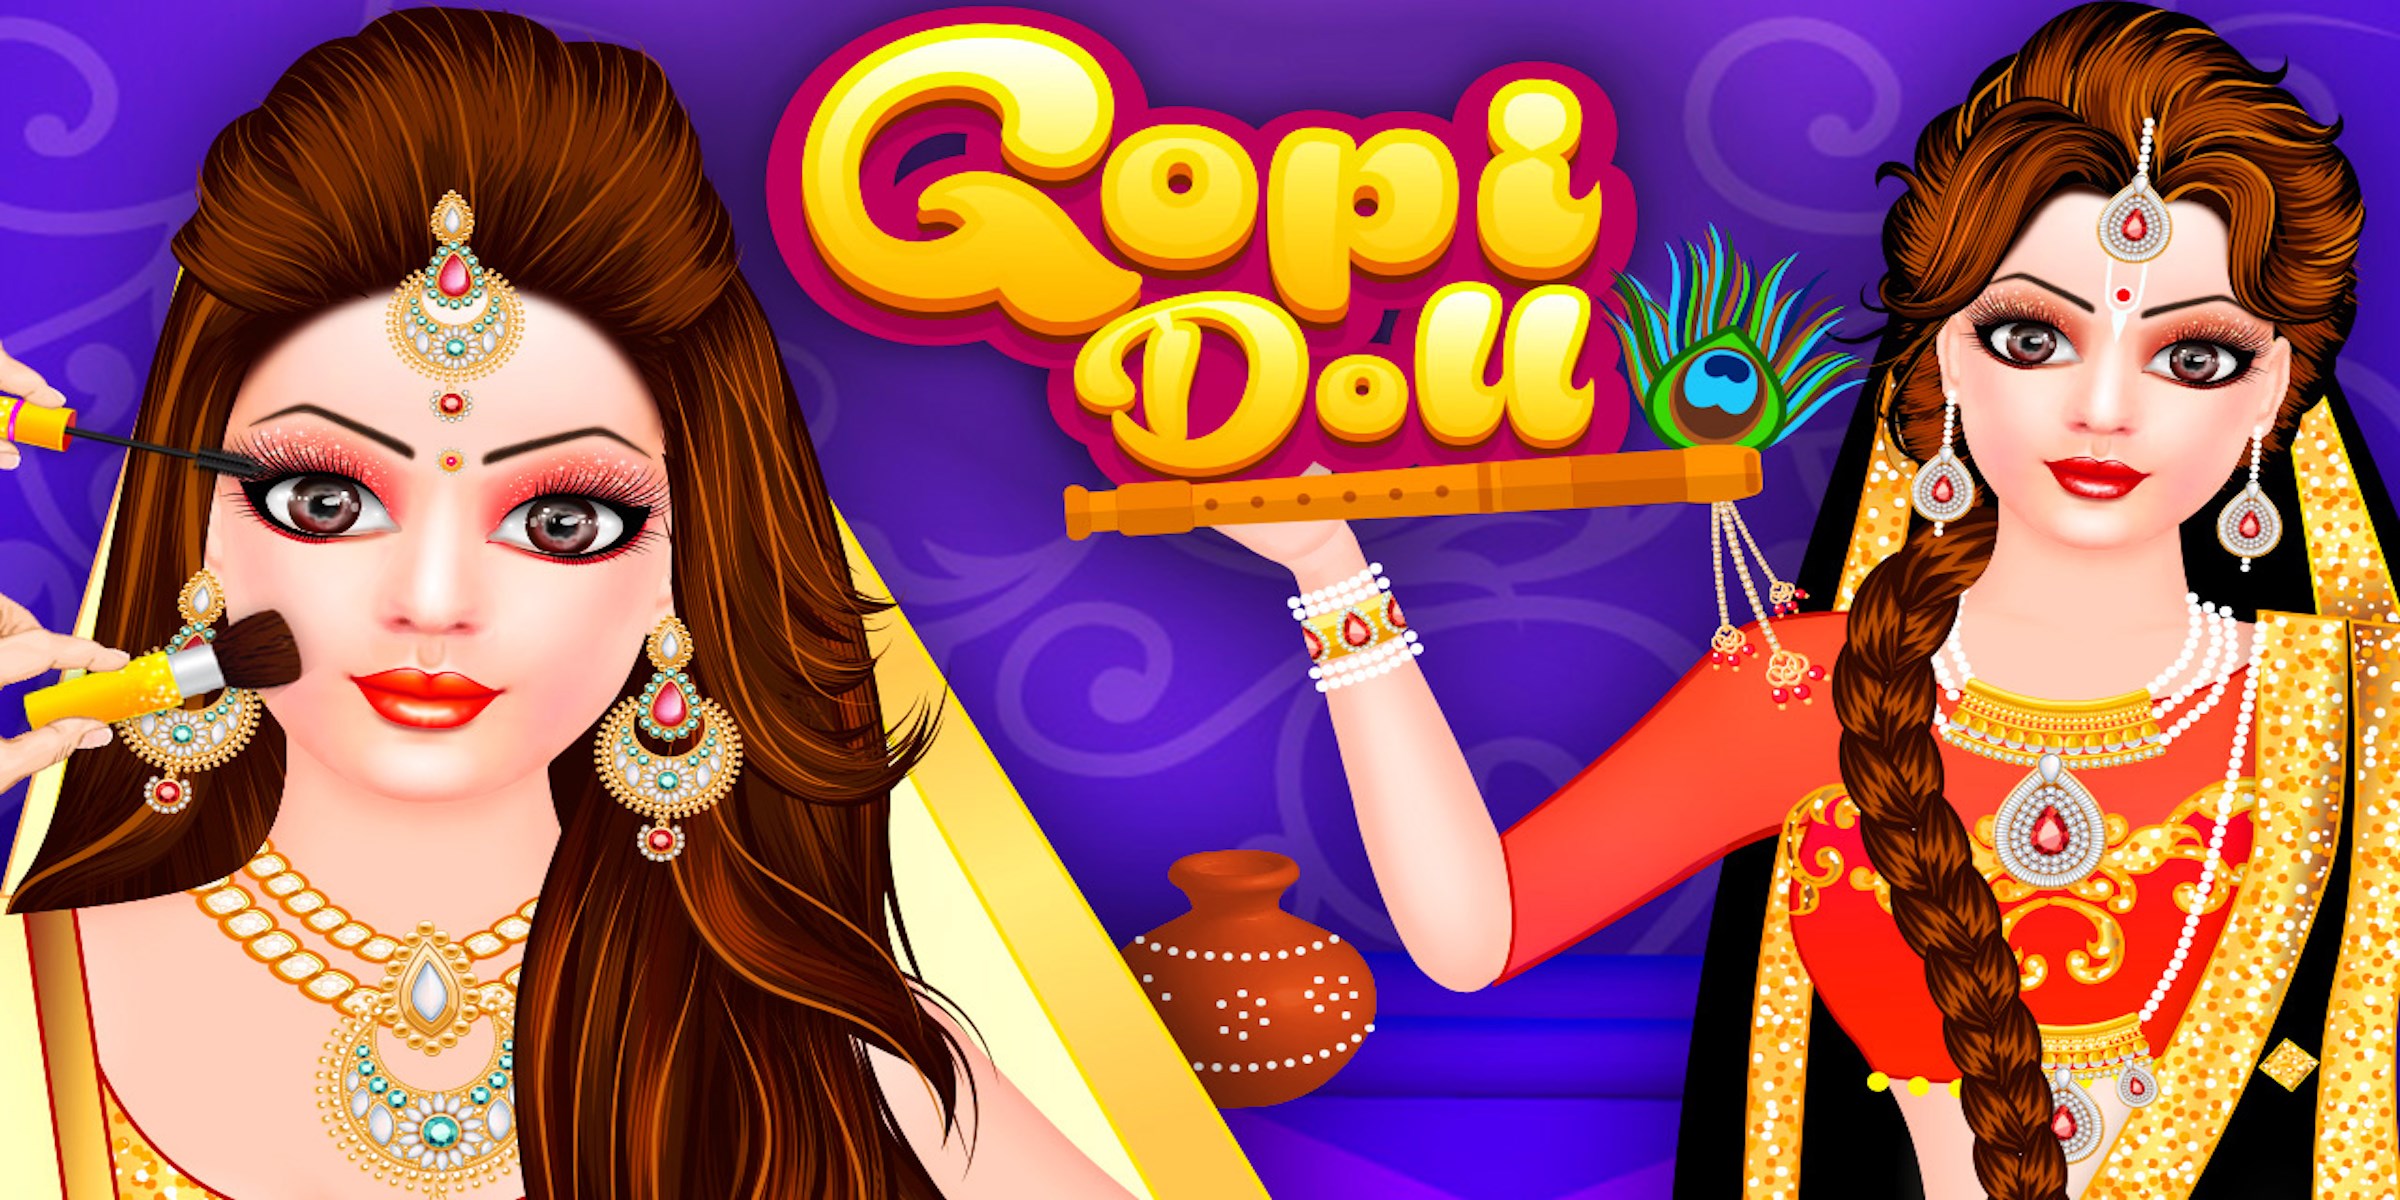 gopi doll fashion salon 2 game download